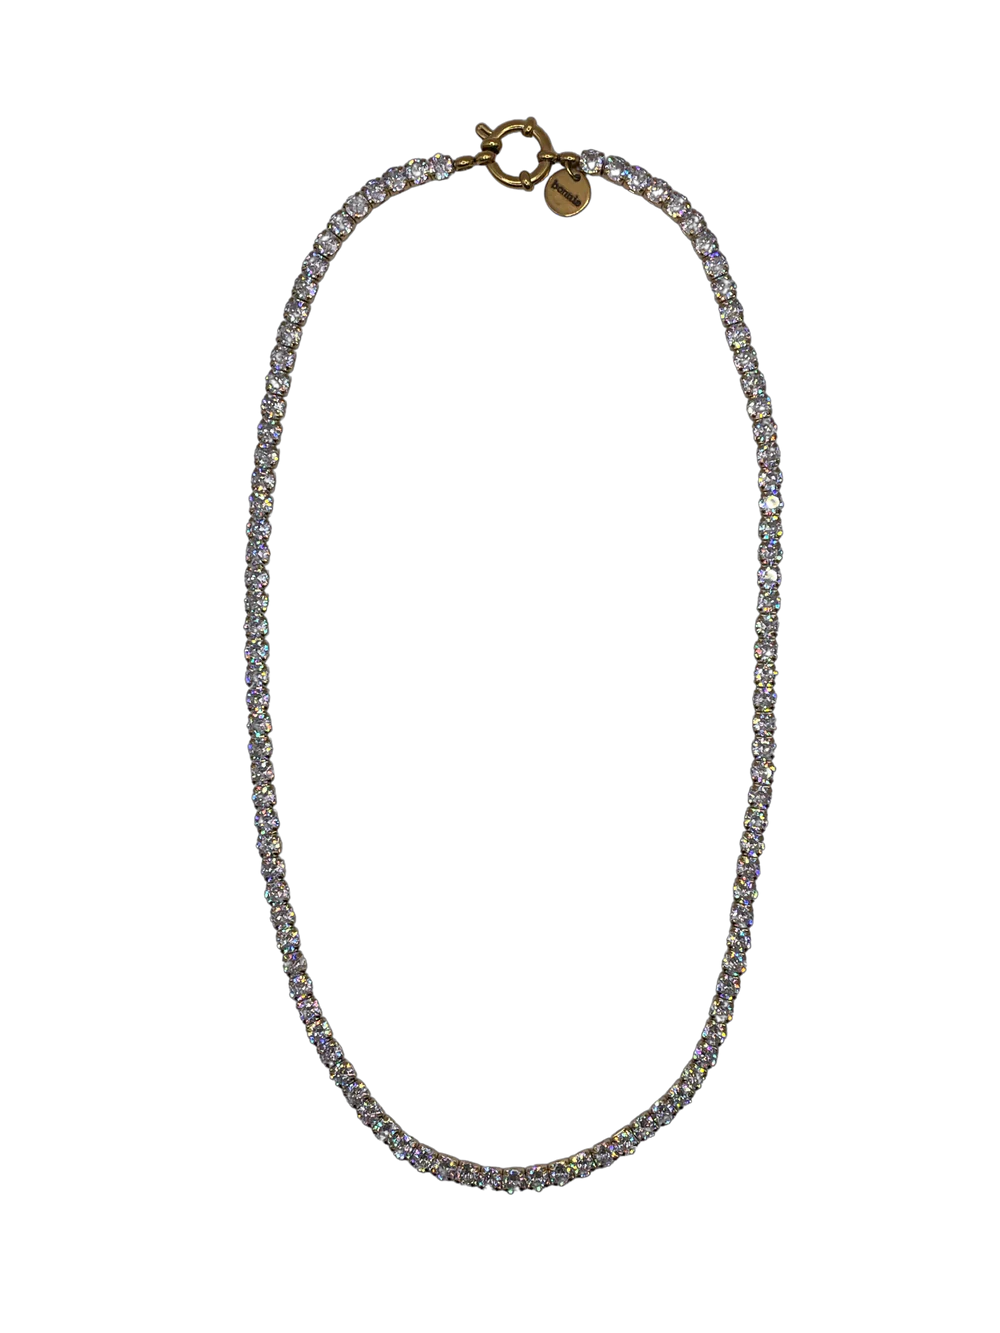 Yuyu Silver Necklace by Bonnie